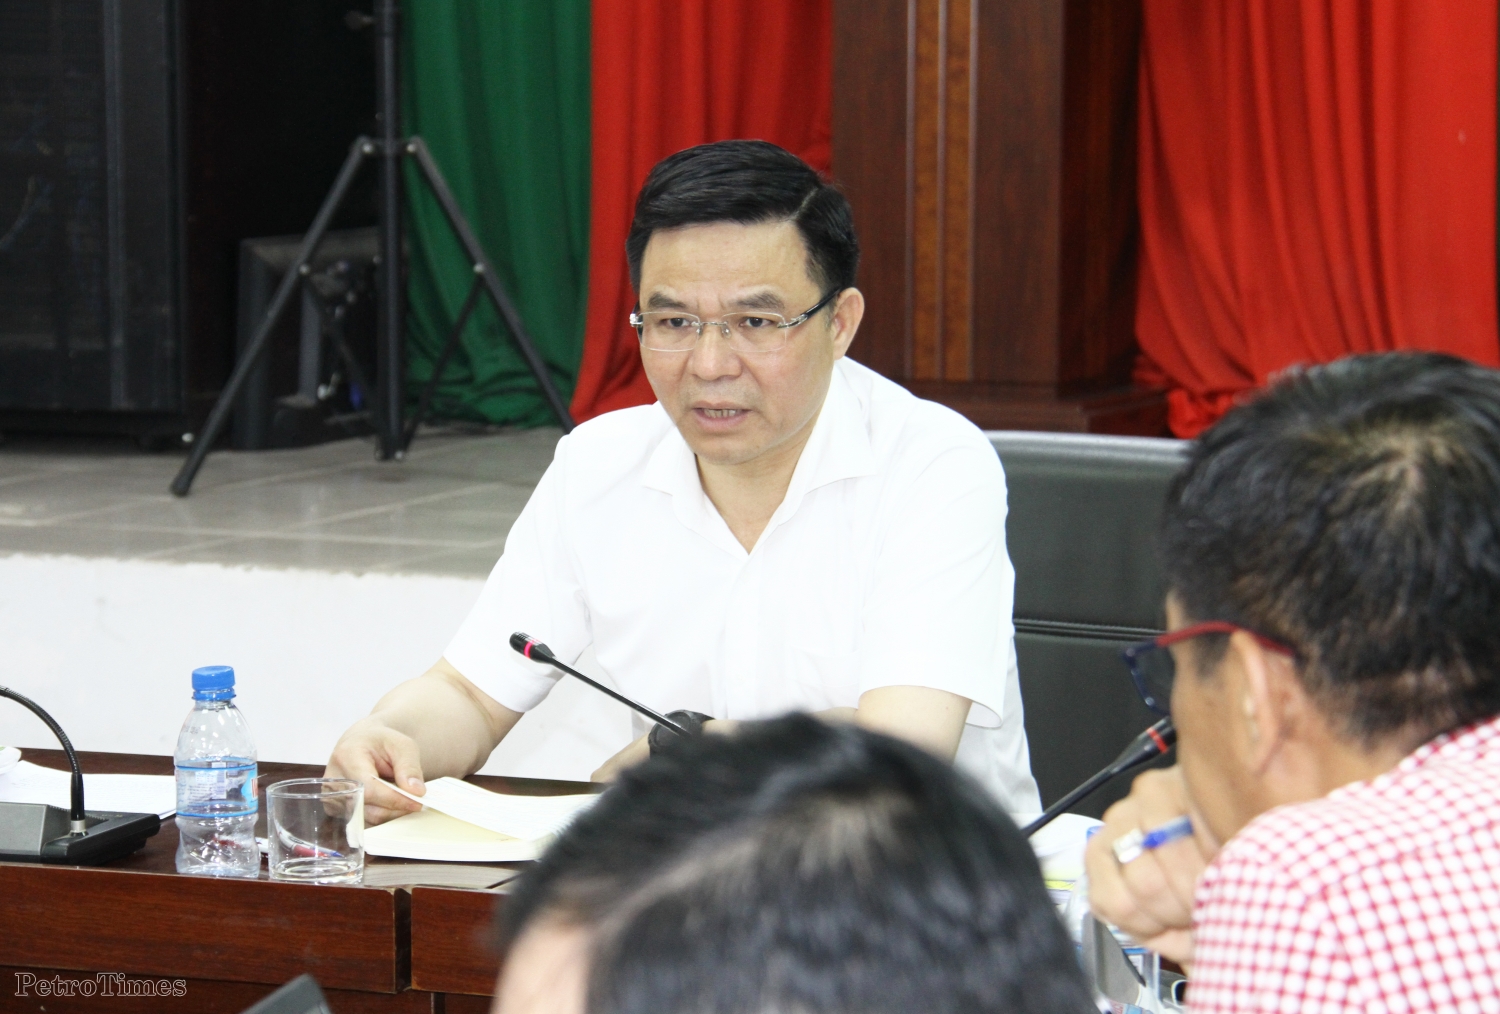 Tổng Giám đốc Petrovietnam Lê Mạnh Hùng làm việc với Ban QLDA Long Phú 1 về công tác triển khai dự án